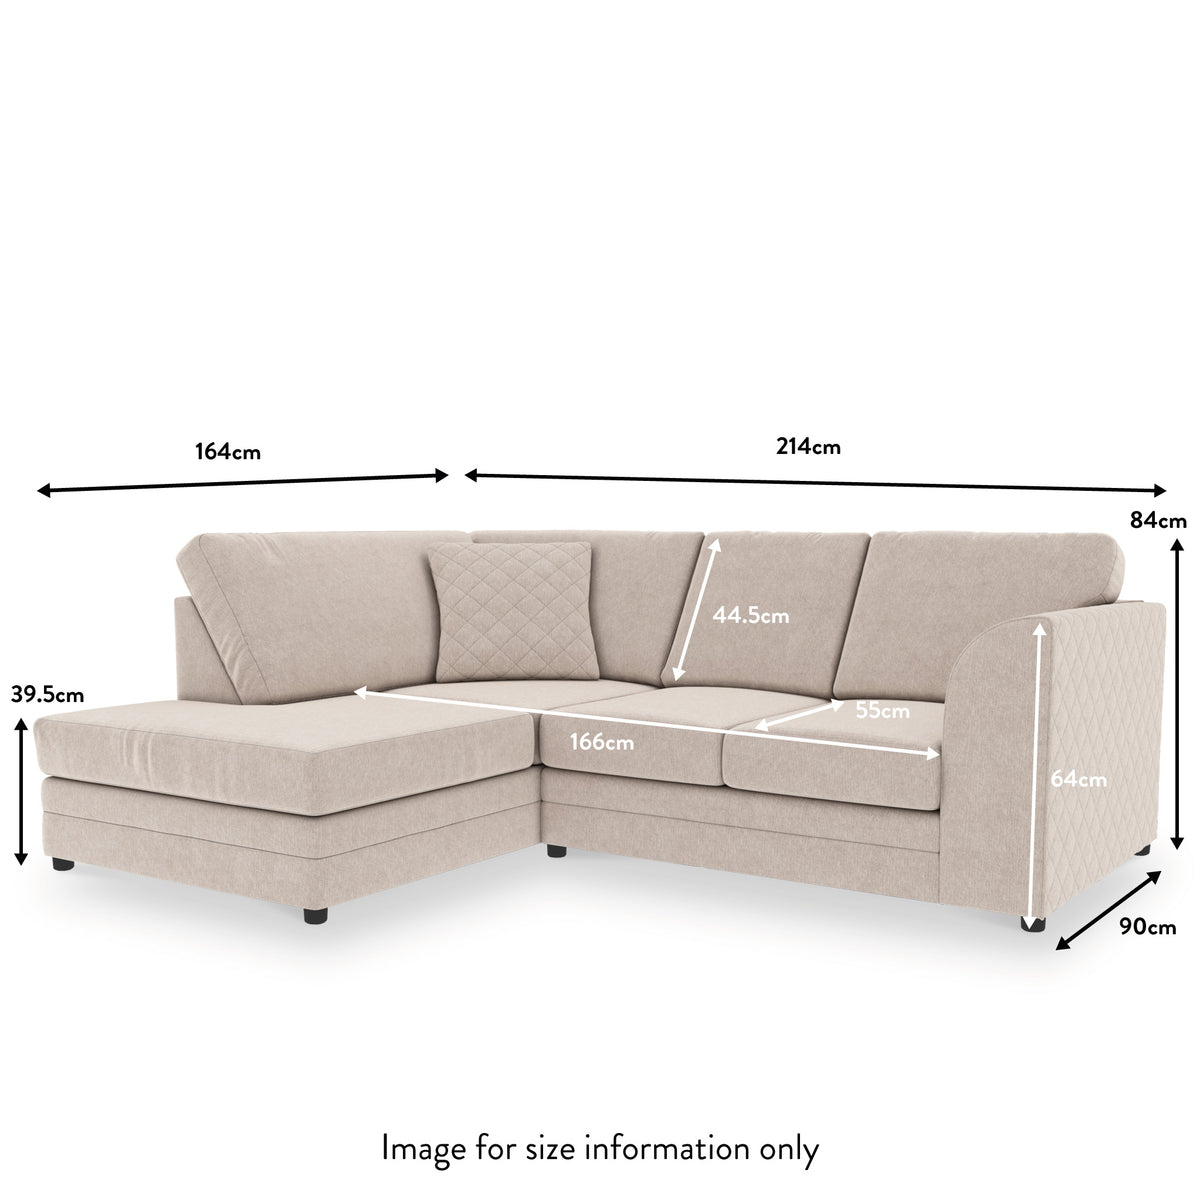 Seymour Stone Right Hand Corner Sofa dimensions